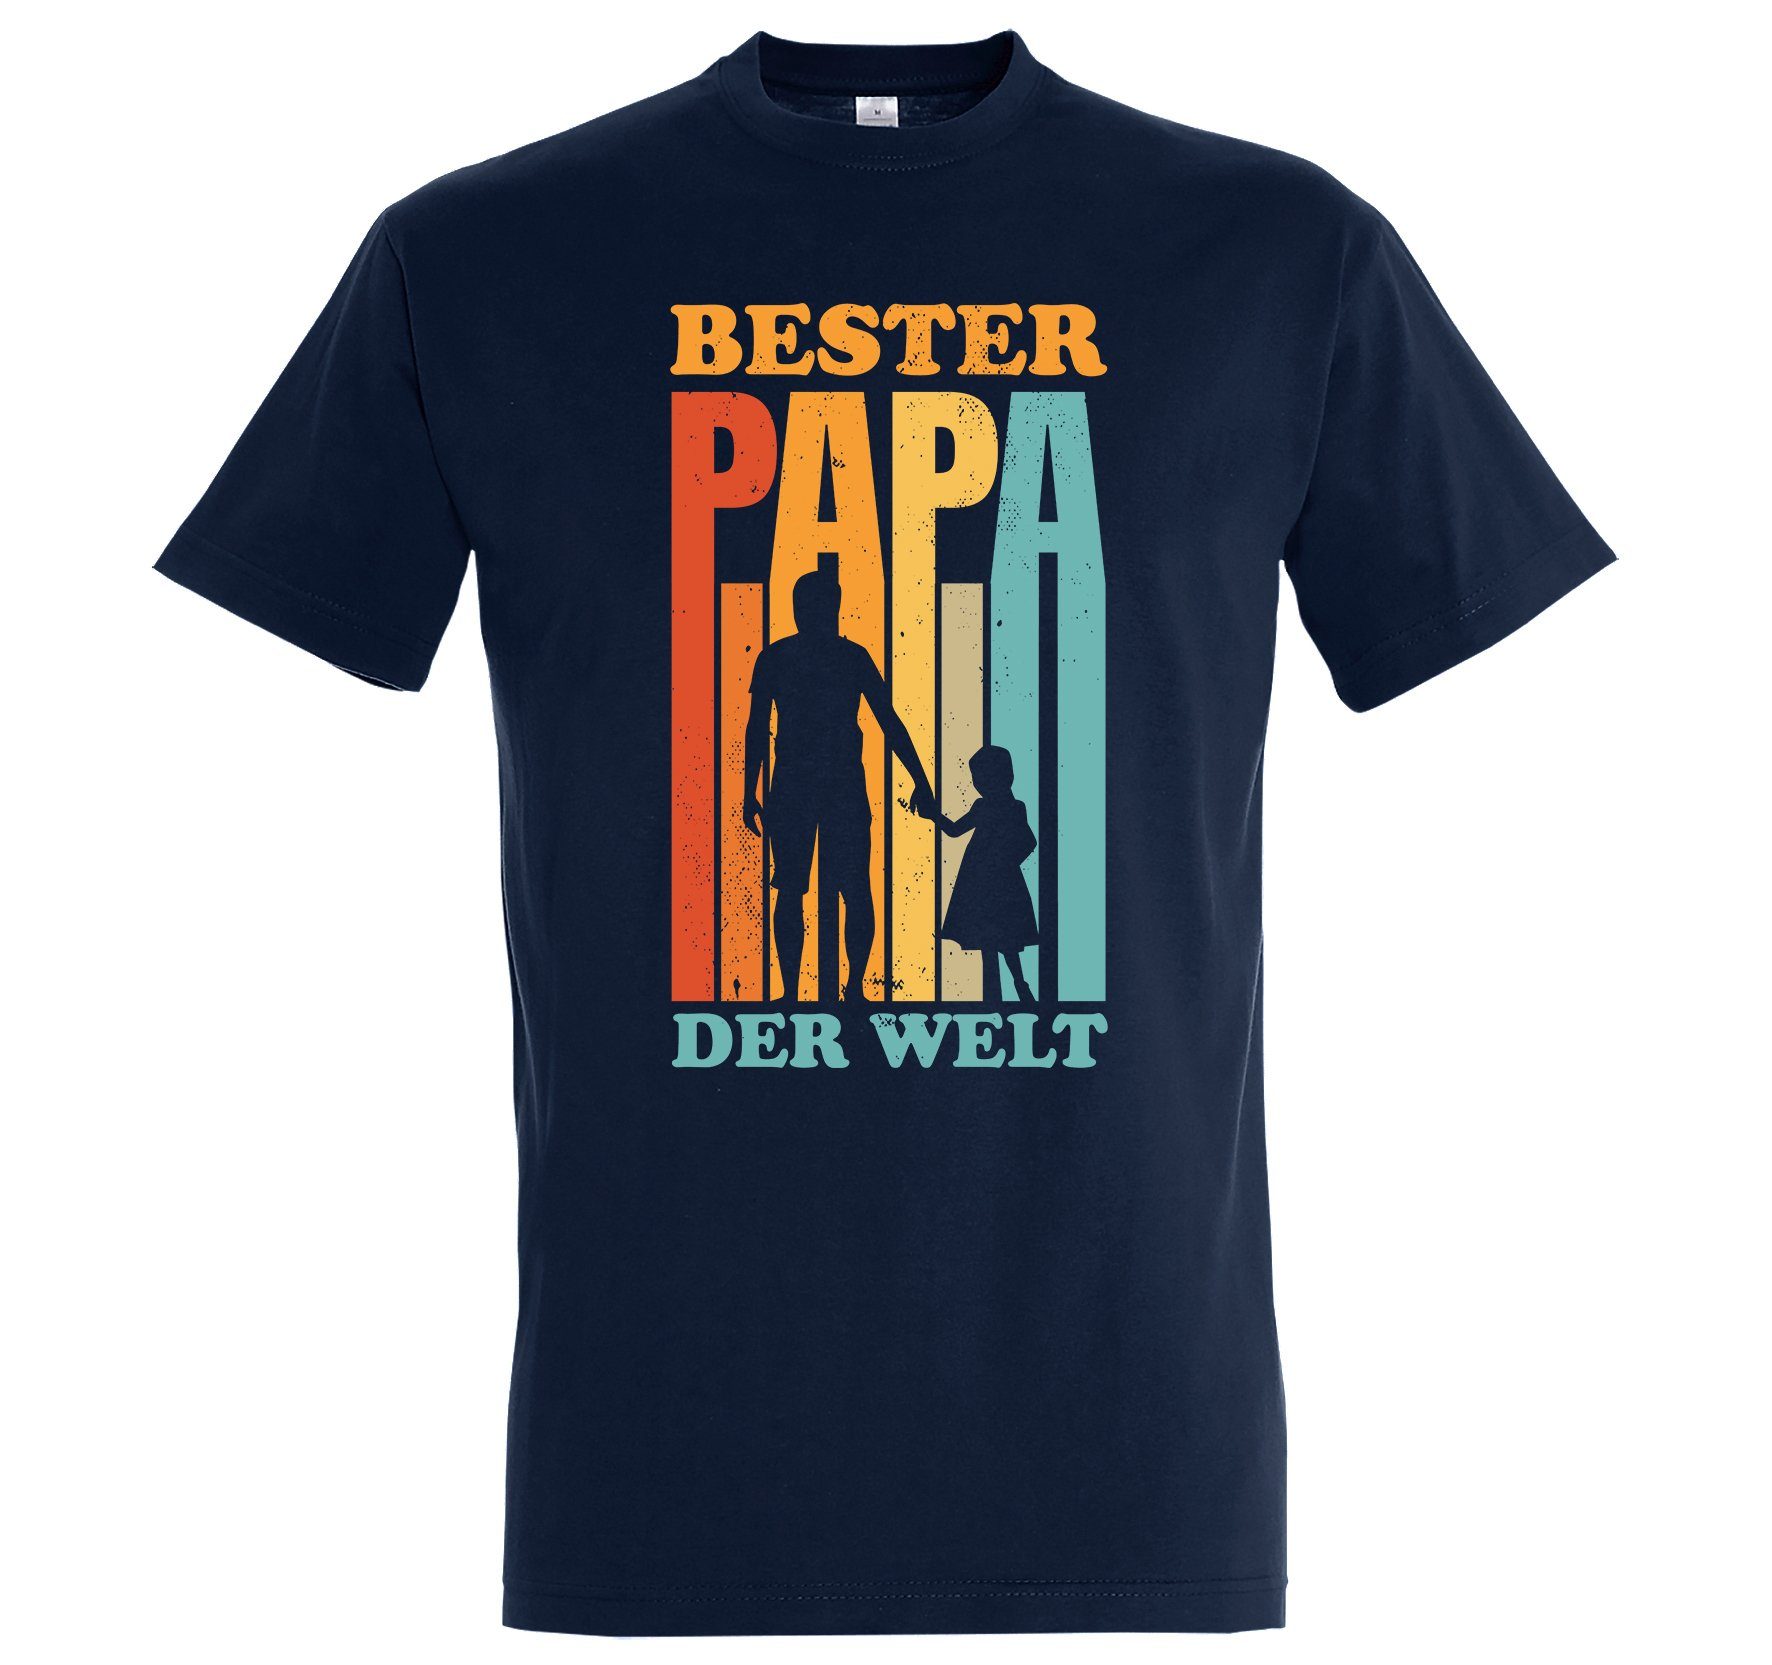 Youth Designz T-Shirt "Bester Papa der Welt" Herren T-Shirt mit Spruch Print Navy